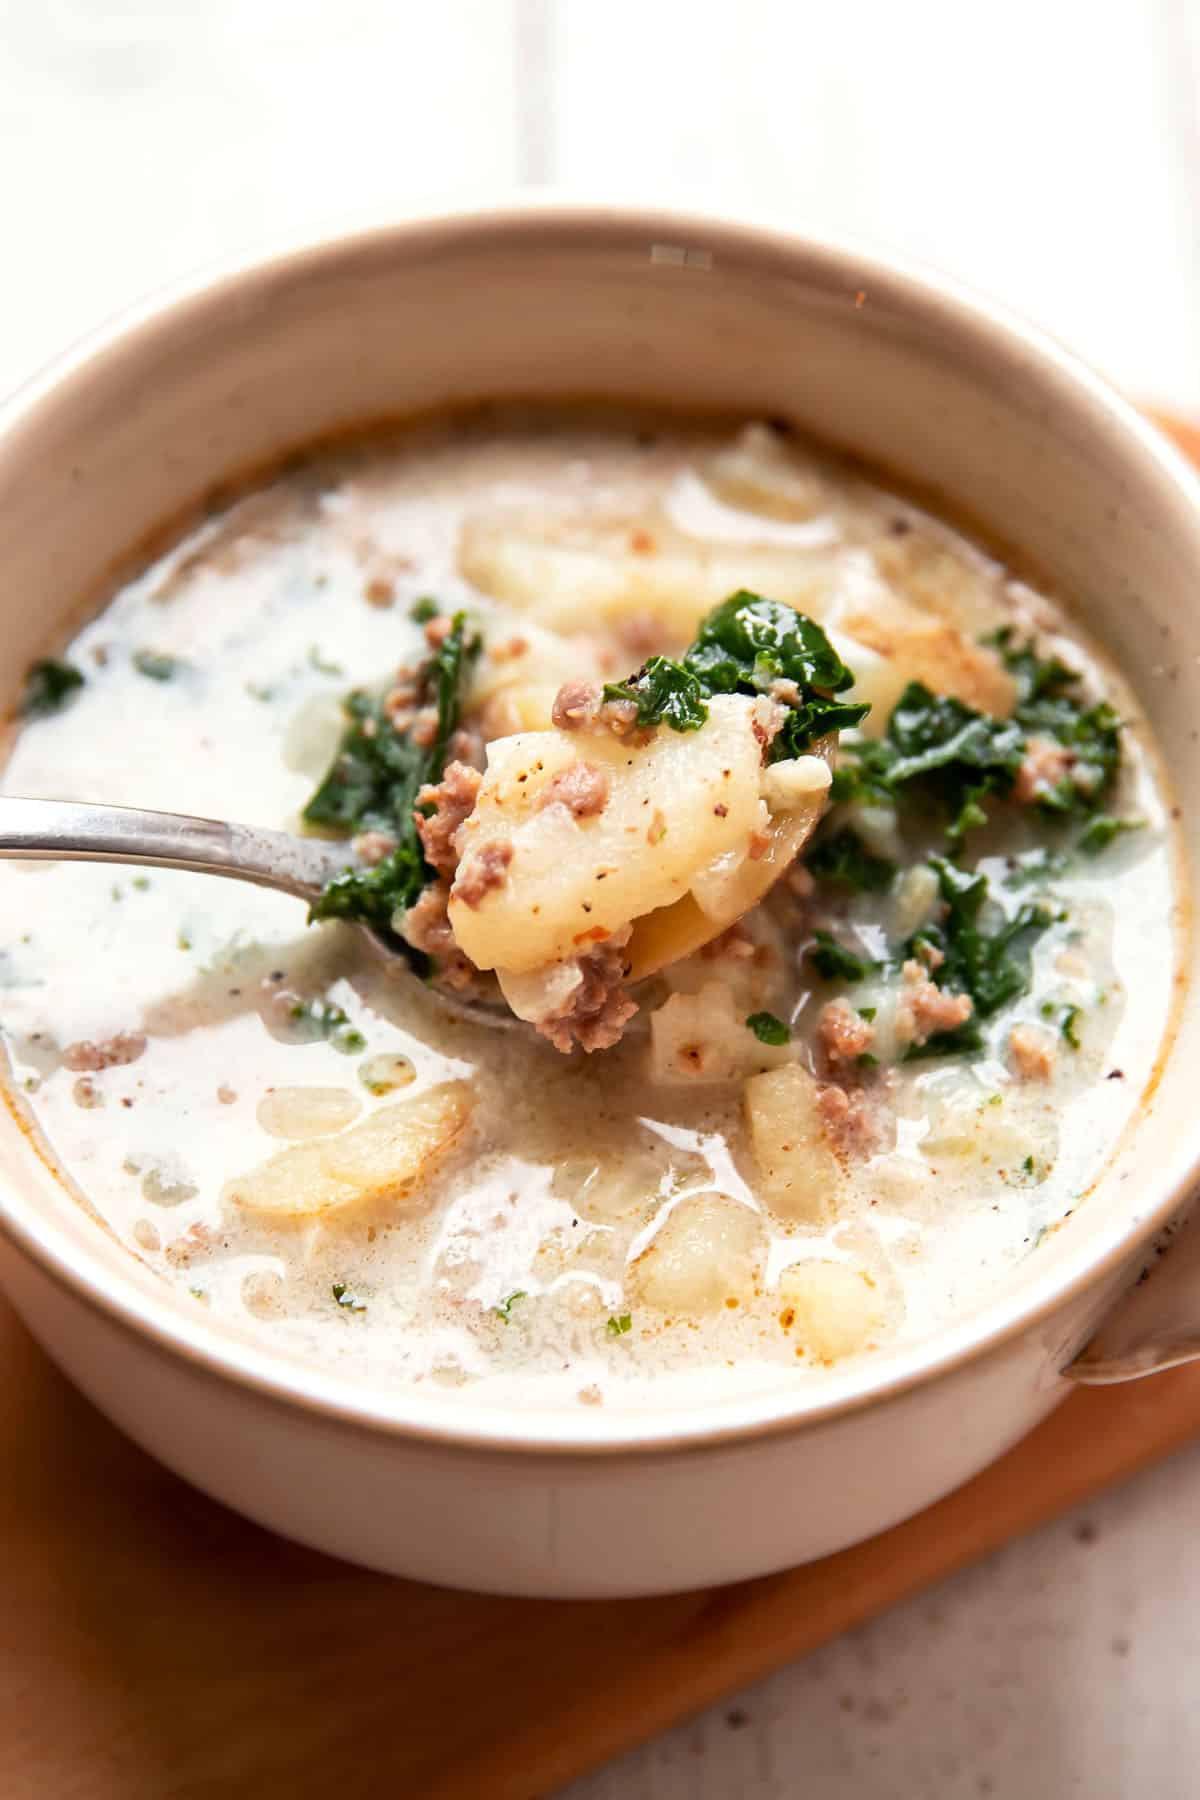 zuppa toscana potato kale soup in a soup bowl